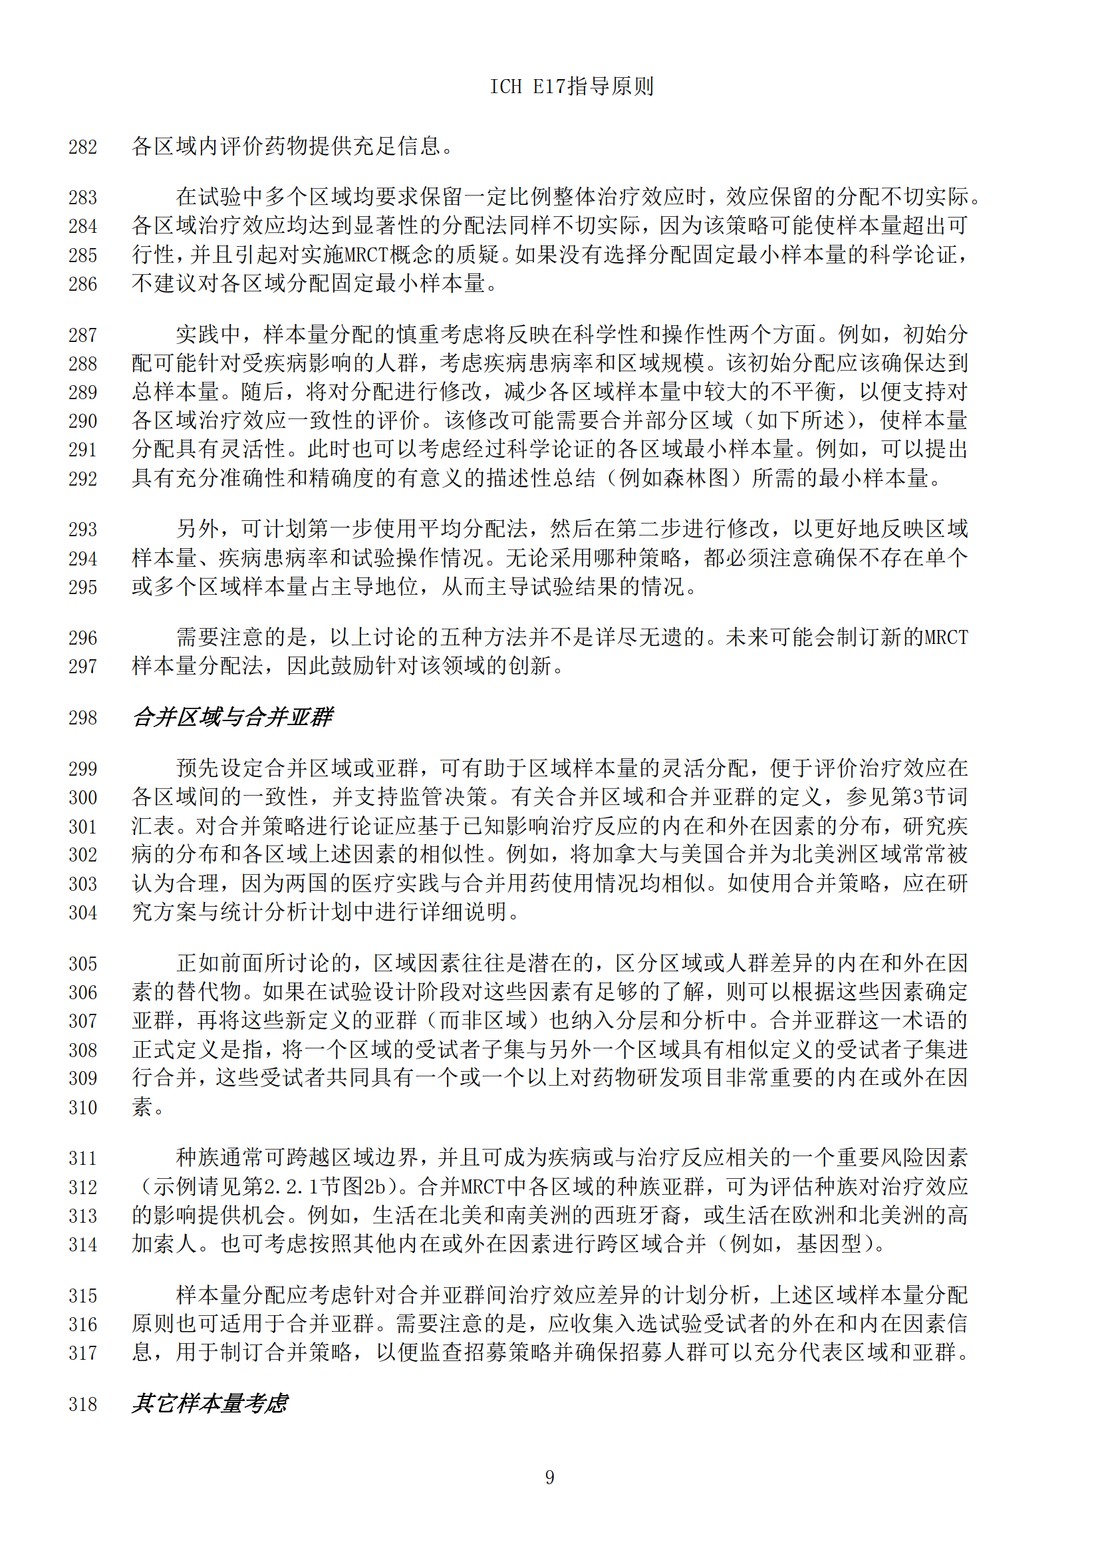 E17多区域临床试验计划与设计的一般原则（中文翻译公开征求意见稿）_12.jpg